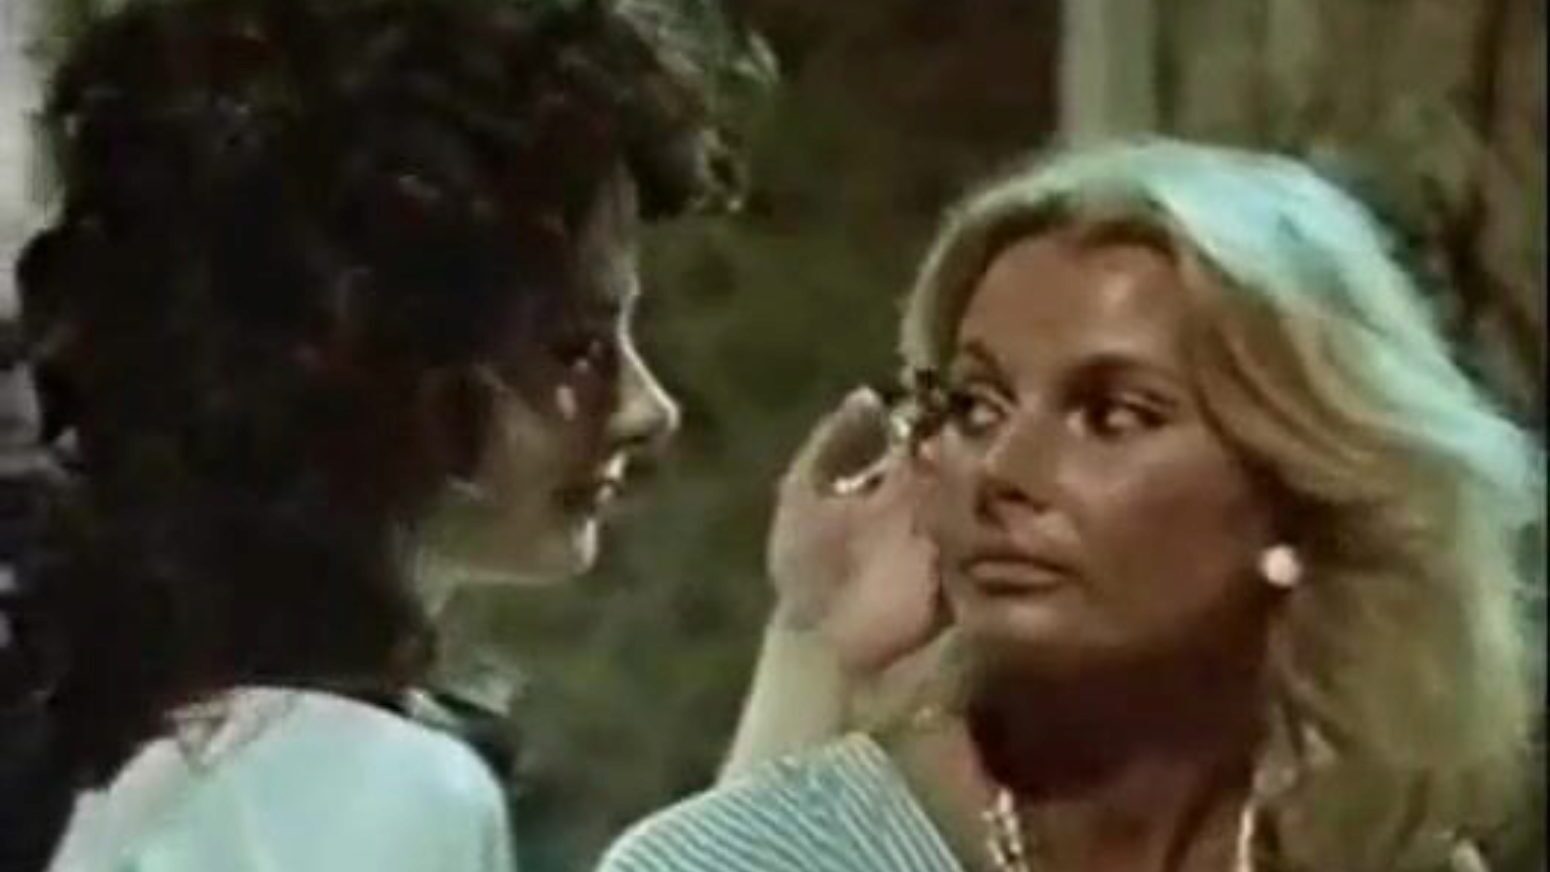 70s Porn Facial - Vintage Lesbians 70s Porn 1970s Vintage Porn - XVDS TV